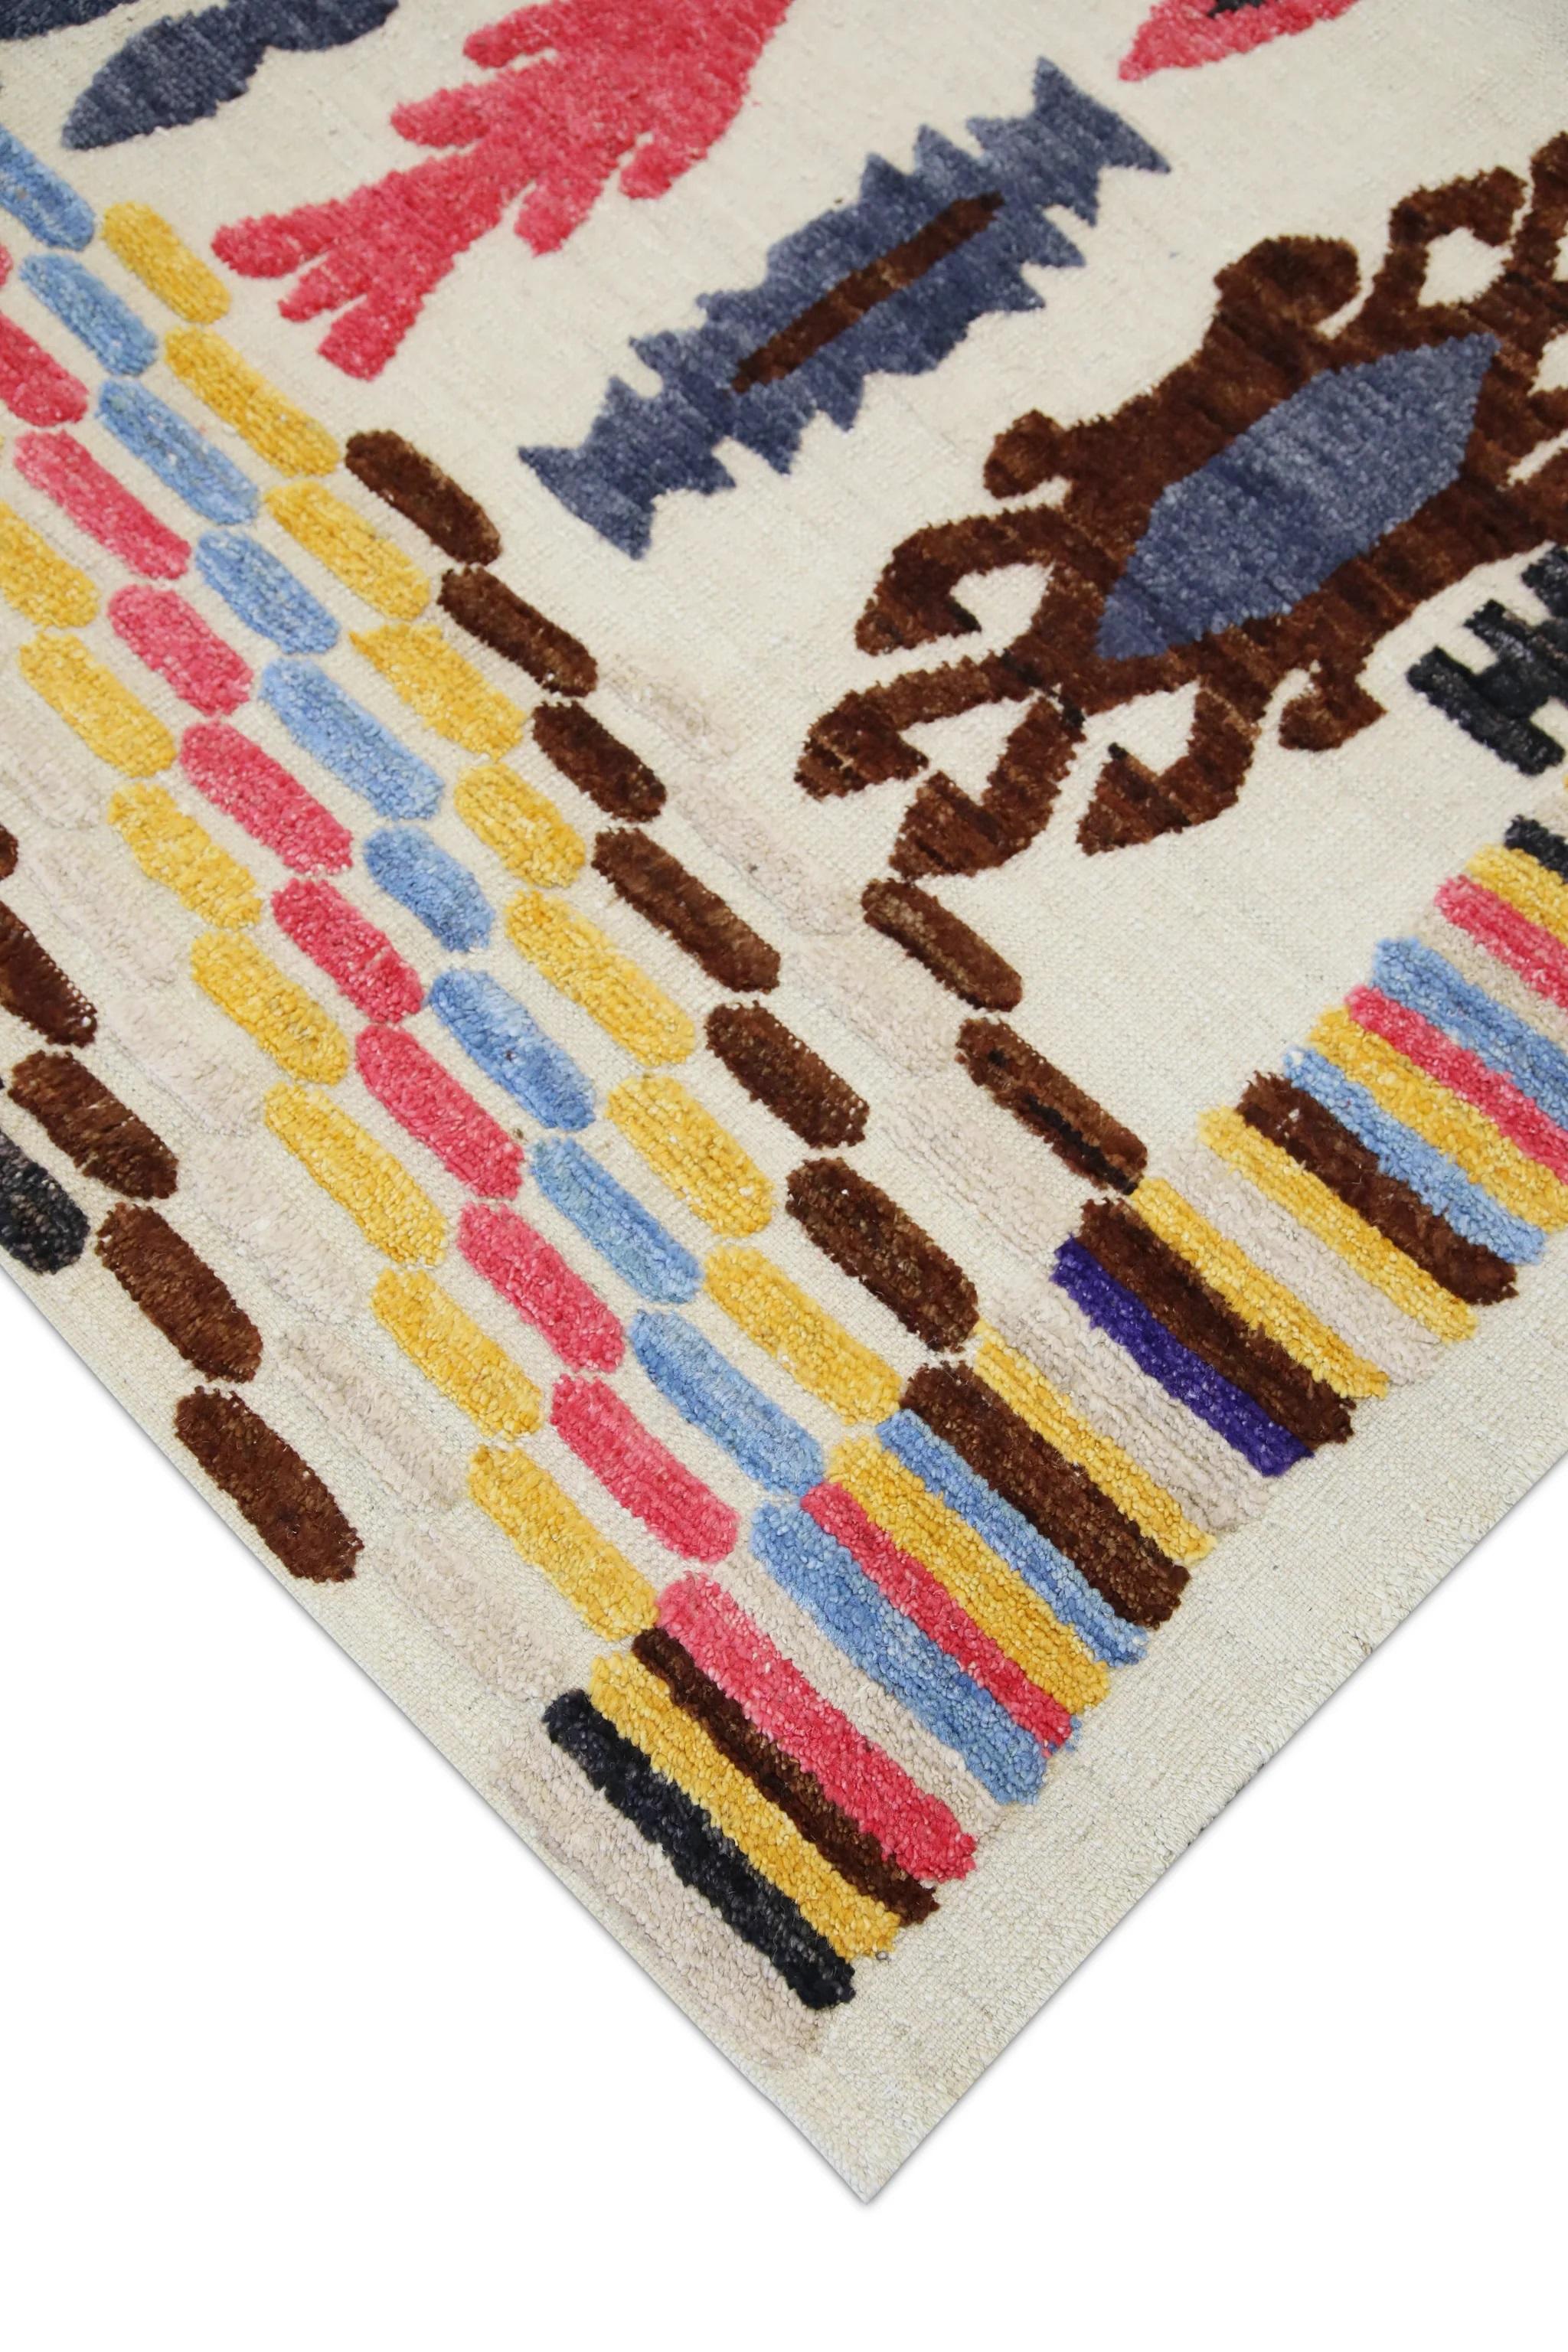 Ce magnifique tapis Kilim turc à tissage plat est un chef-d'œuvre de l'artisanat traditionnel. Chaque tapis est méticuleusement tissé à la main par des artisans qualifiés selon des techniques ancestrales transmises de génération en génération. Le